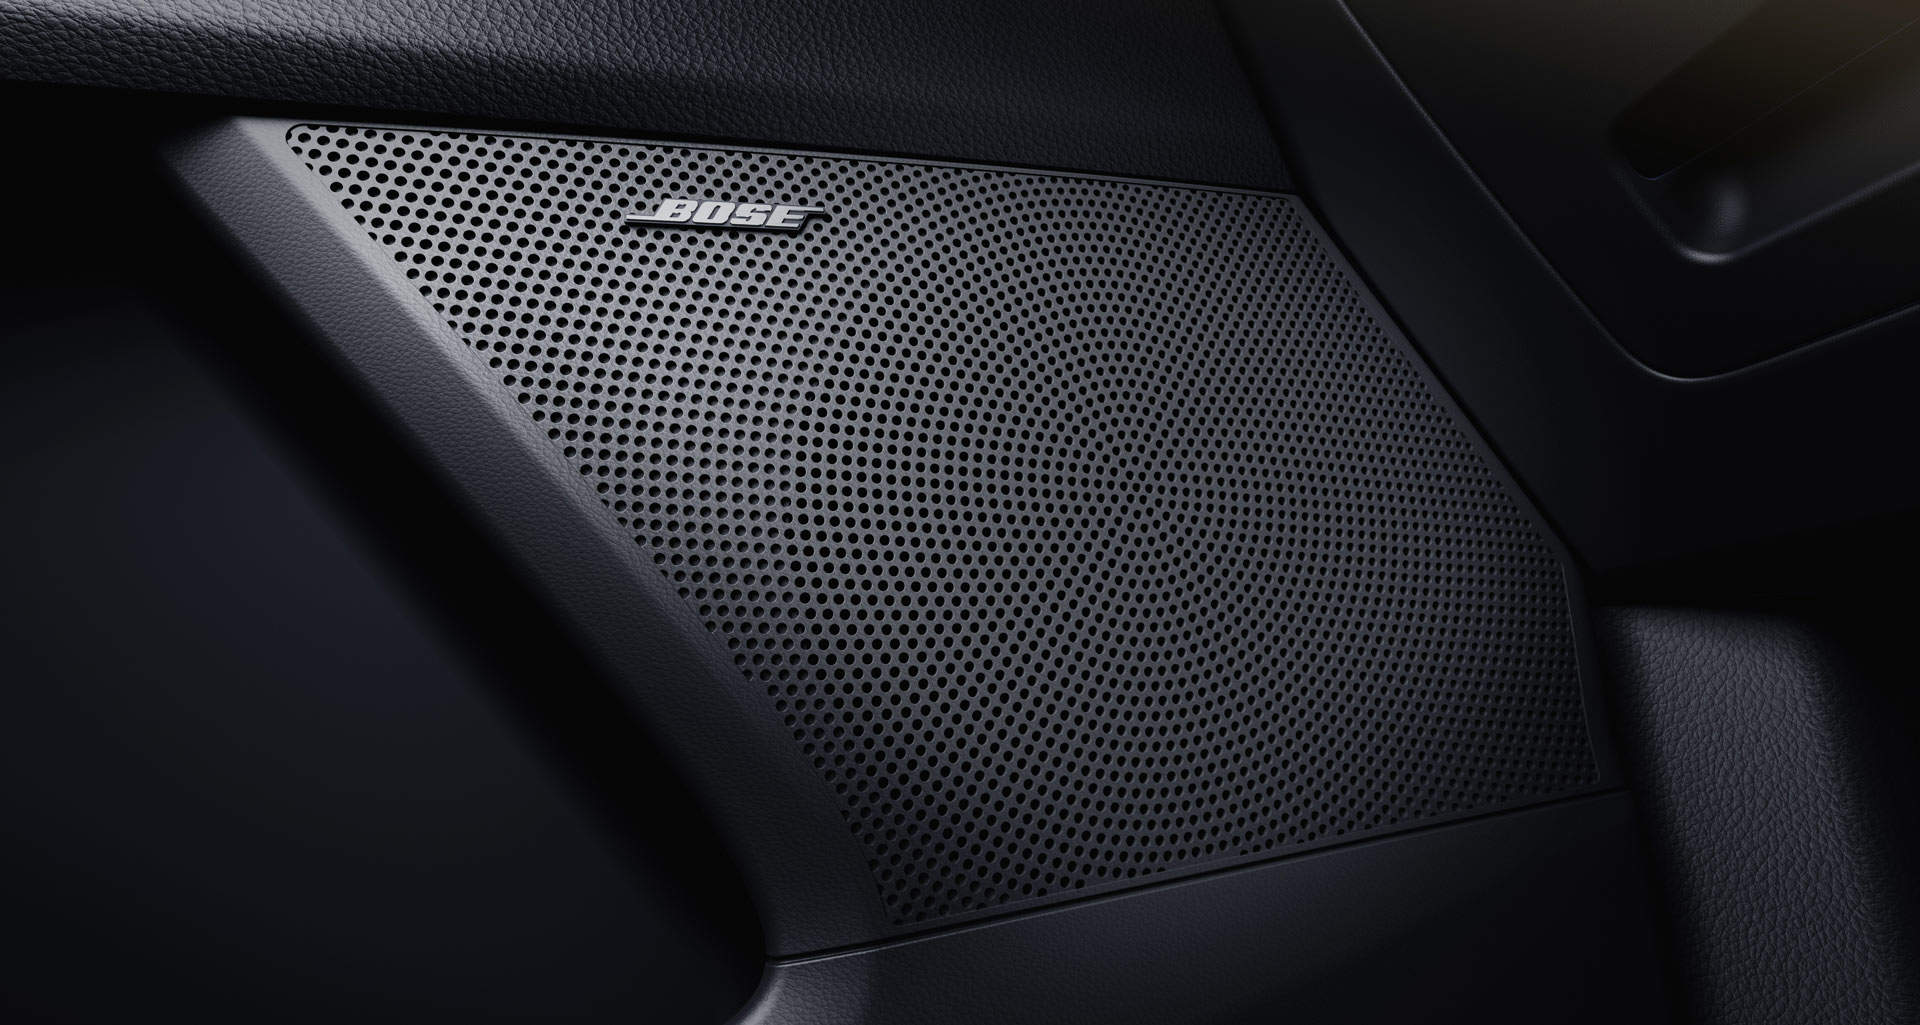 Impianto Bose® Premium Sound System